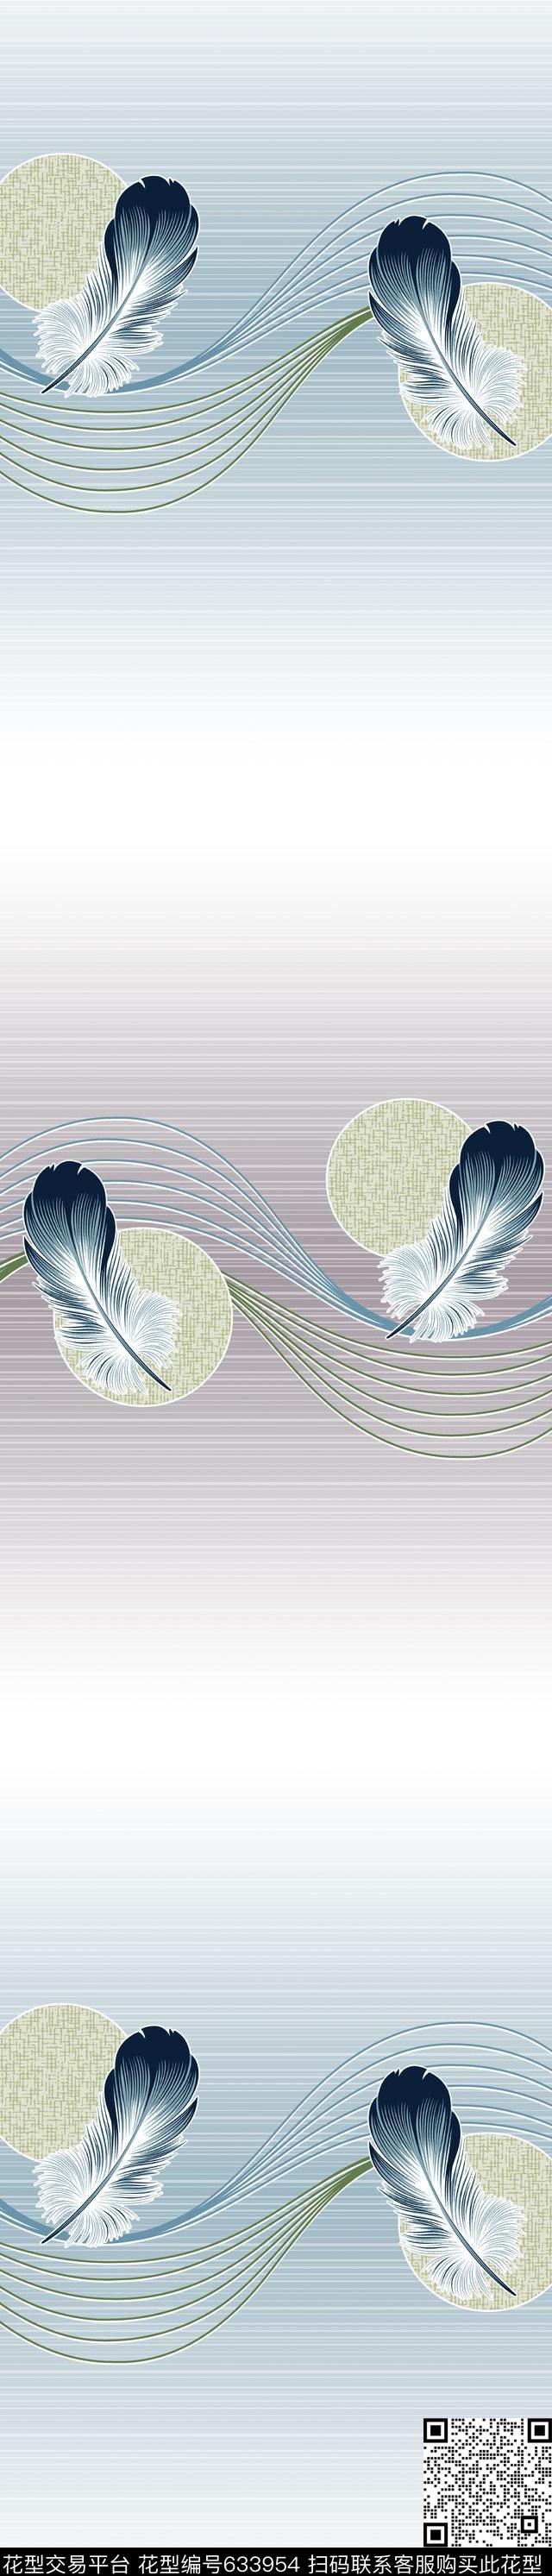 YJH130710u.jpg - 633954 - 窗帘 羽毛 - 传统印花花型 － 窗帘花型设计 － 瓦栏